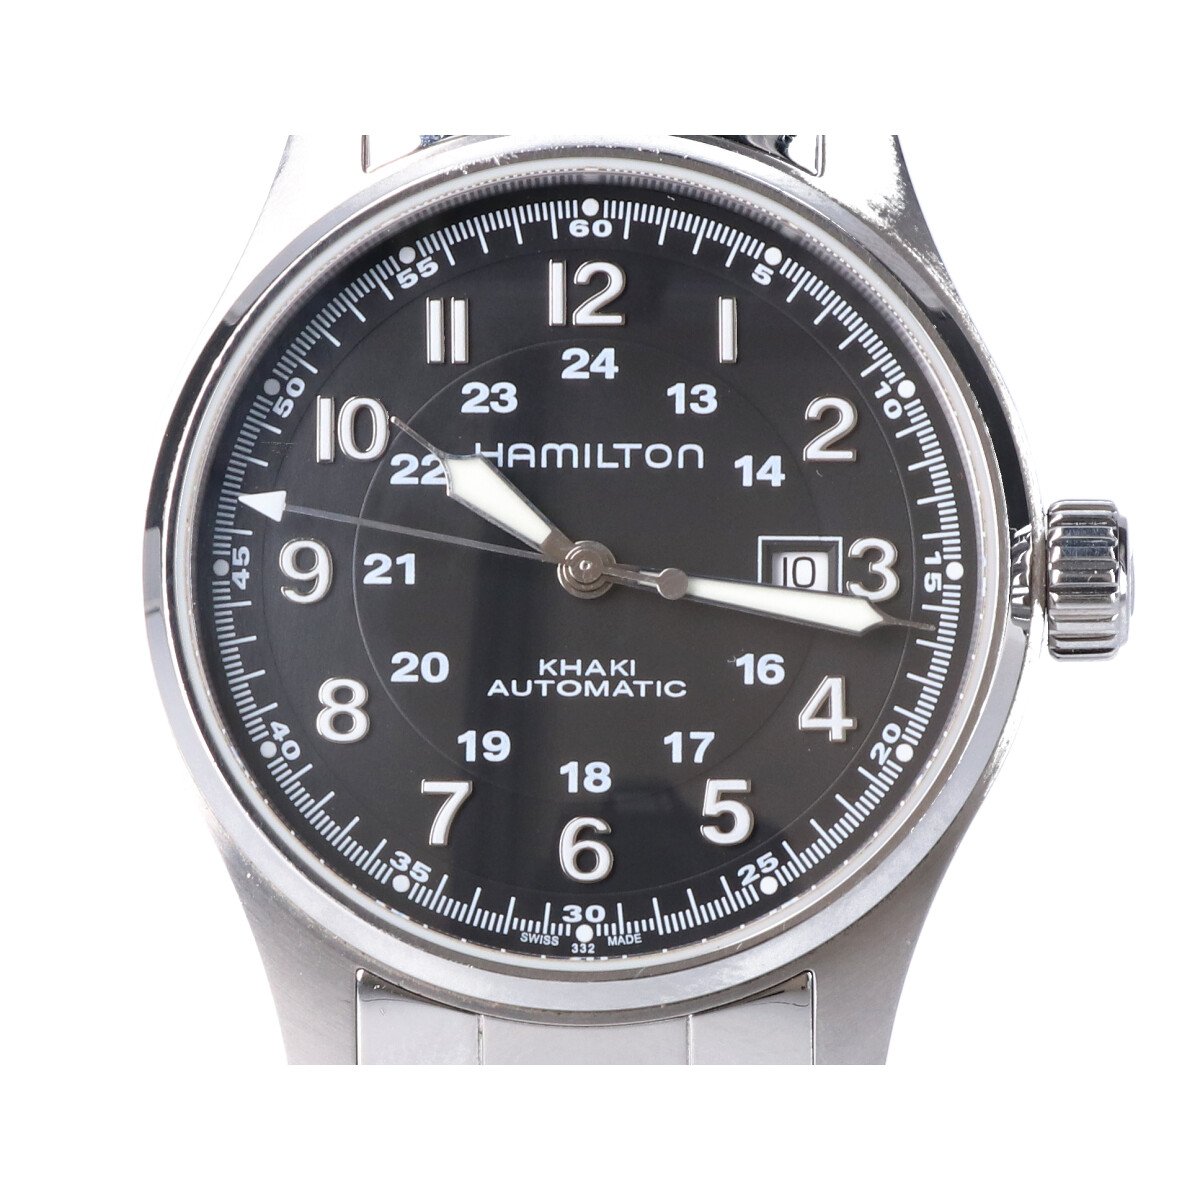 ハミルトンのH7062521 カーキフィールド 自動巻き 腕時計の買取実績です。